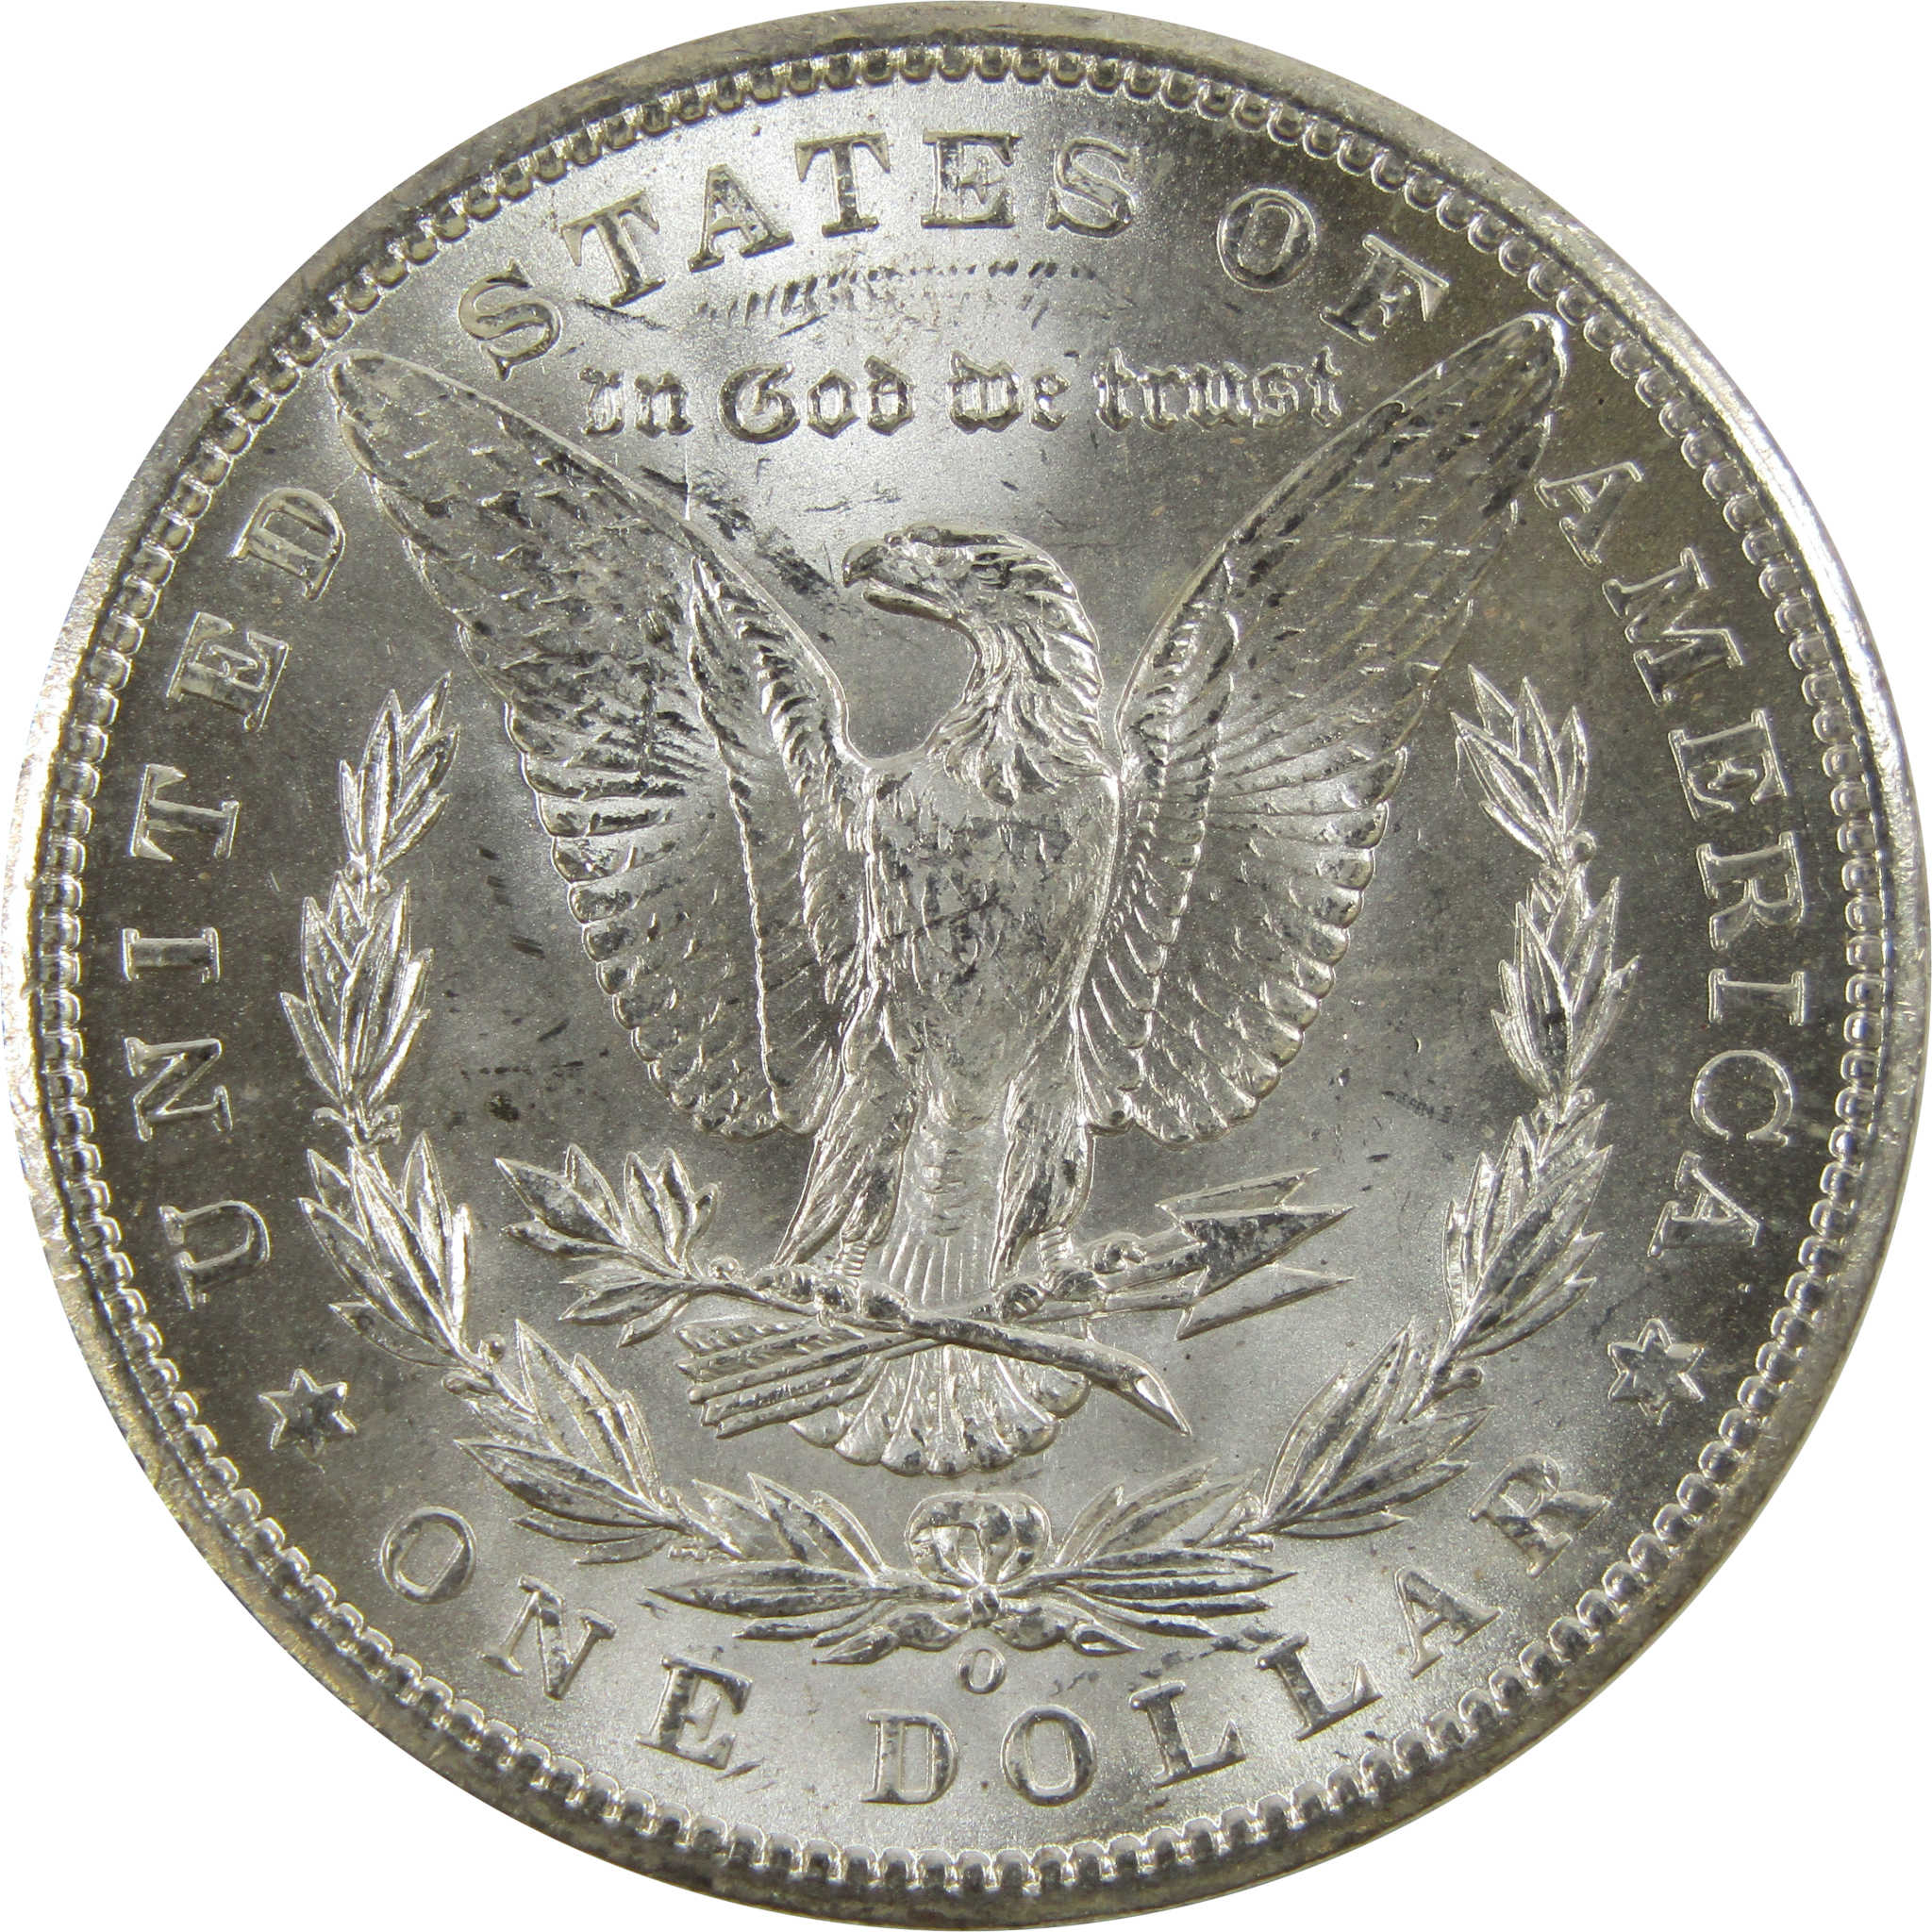 1898 O Morgan Dollar BU Uncirculated 90% Silver $1 Coin SKU:I5212 - Morgan coin - Morgan silver dollar - Morgan silver dollar for sale - Profile Coins &amp; Collectibles